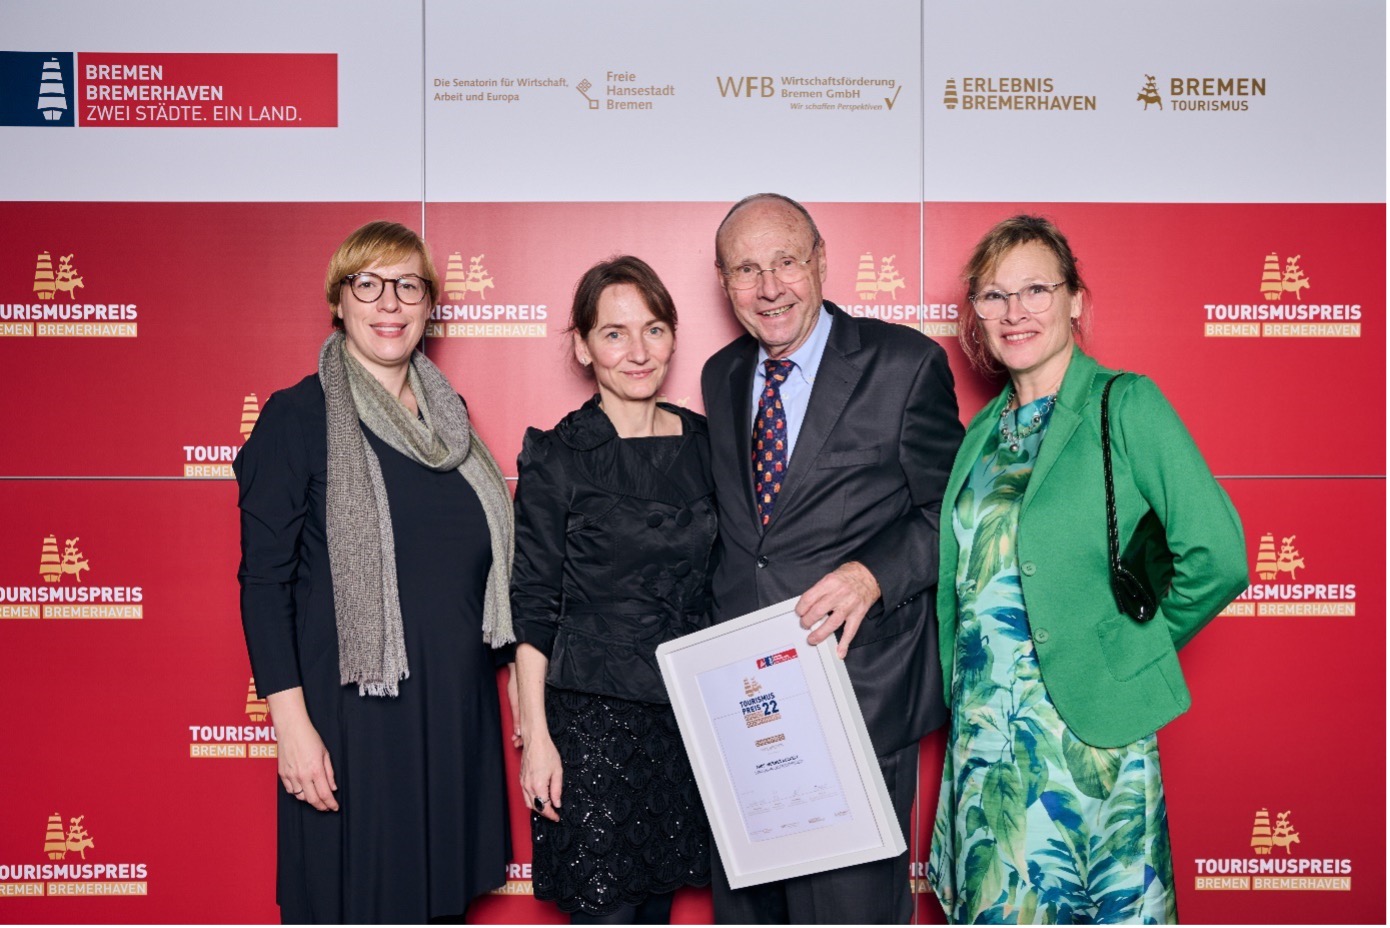 Die vier Gewinner:innen der Kategorie Ehrenpreis Bremen stehen vor einer roten Wand mit Logos des Tourismuspreises 2022